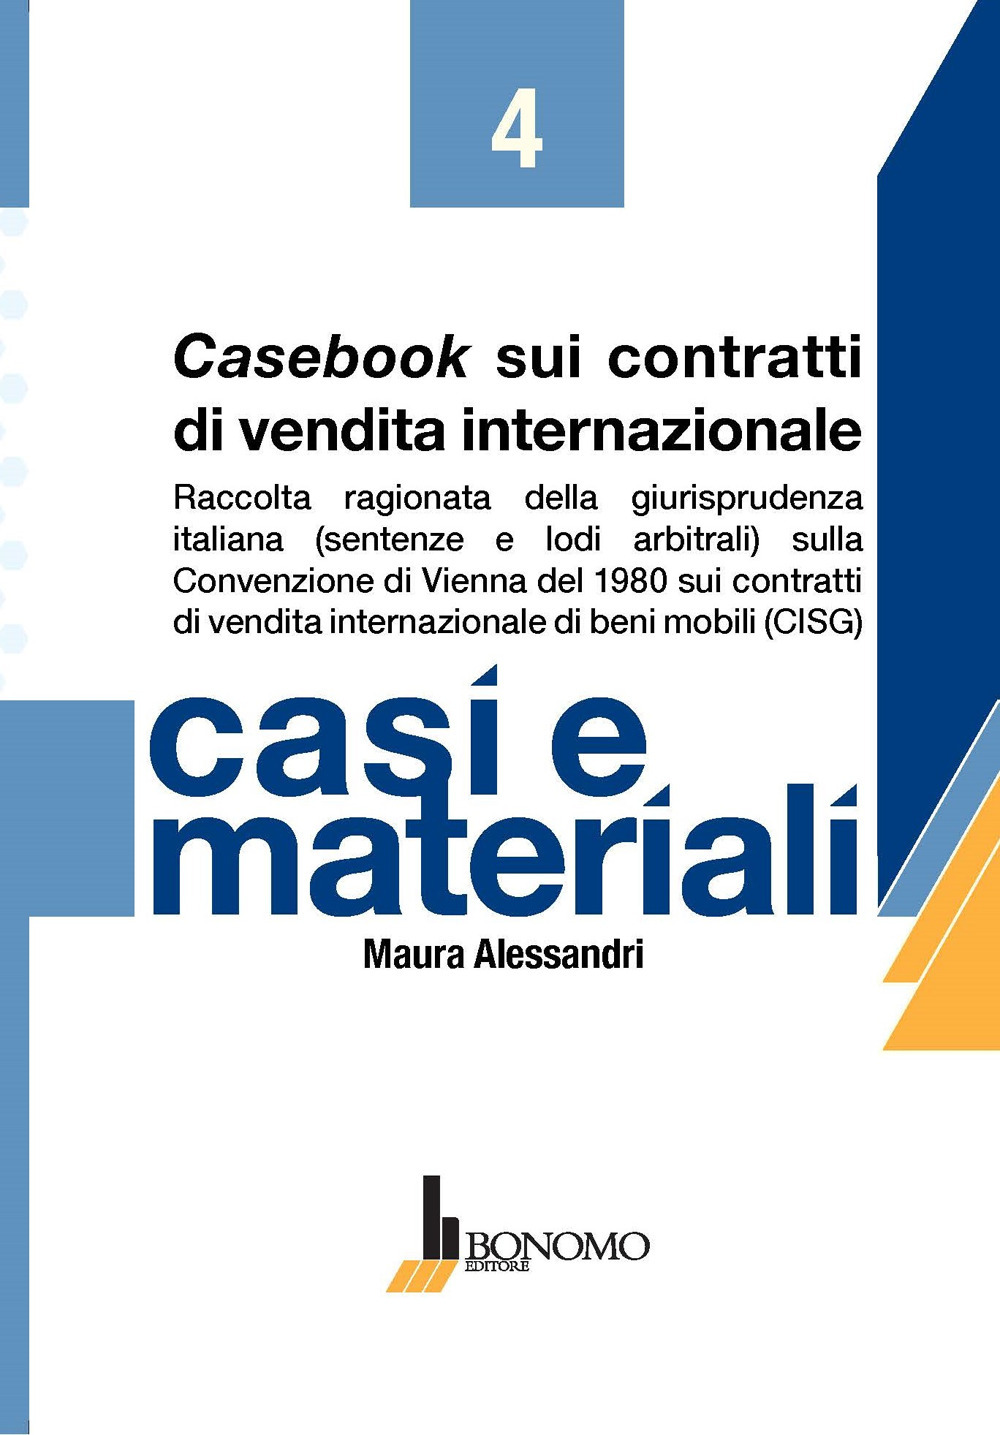 Casebook sui contratti di vendita internazionale